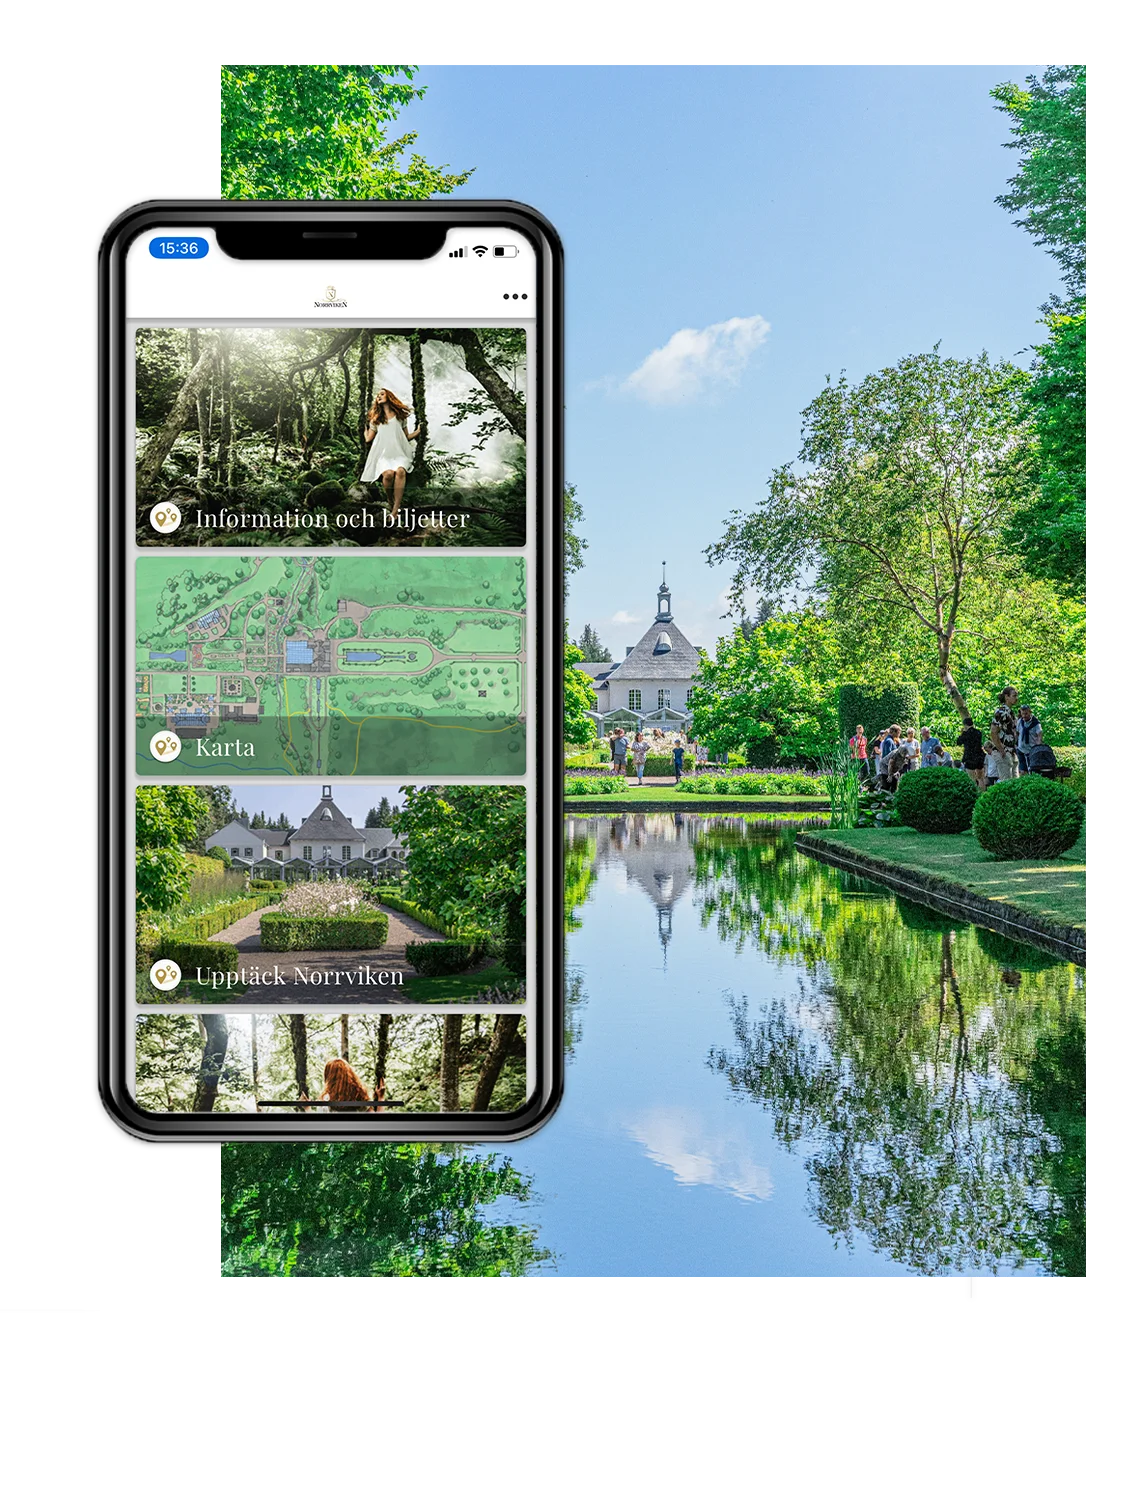 Telefon med bakgrundsbild från Norrvikens trädgårdar